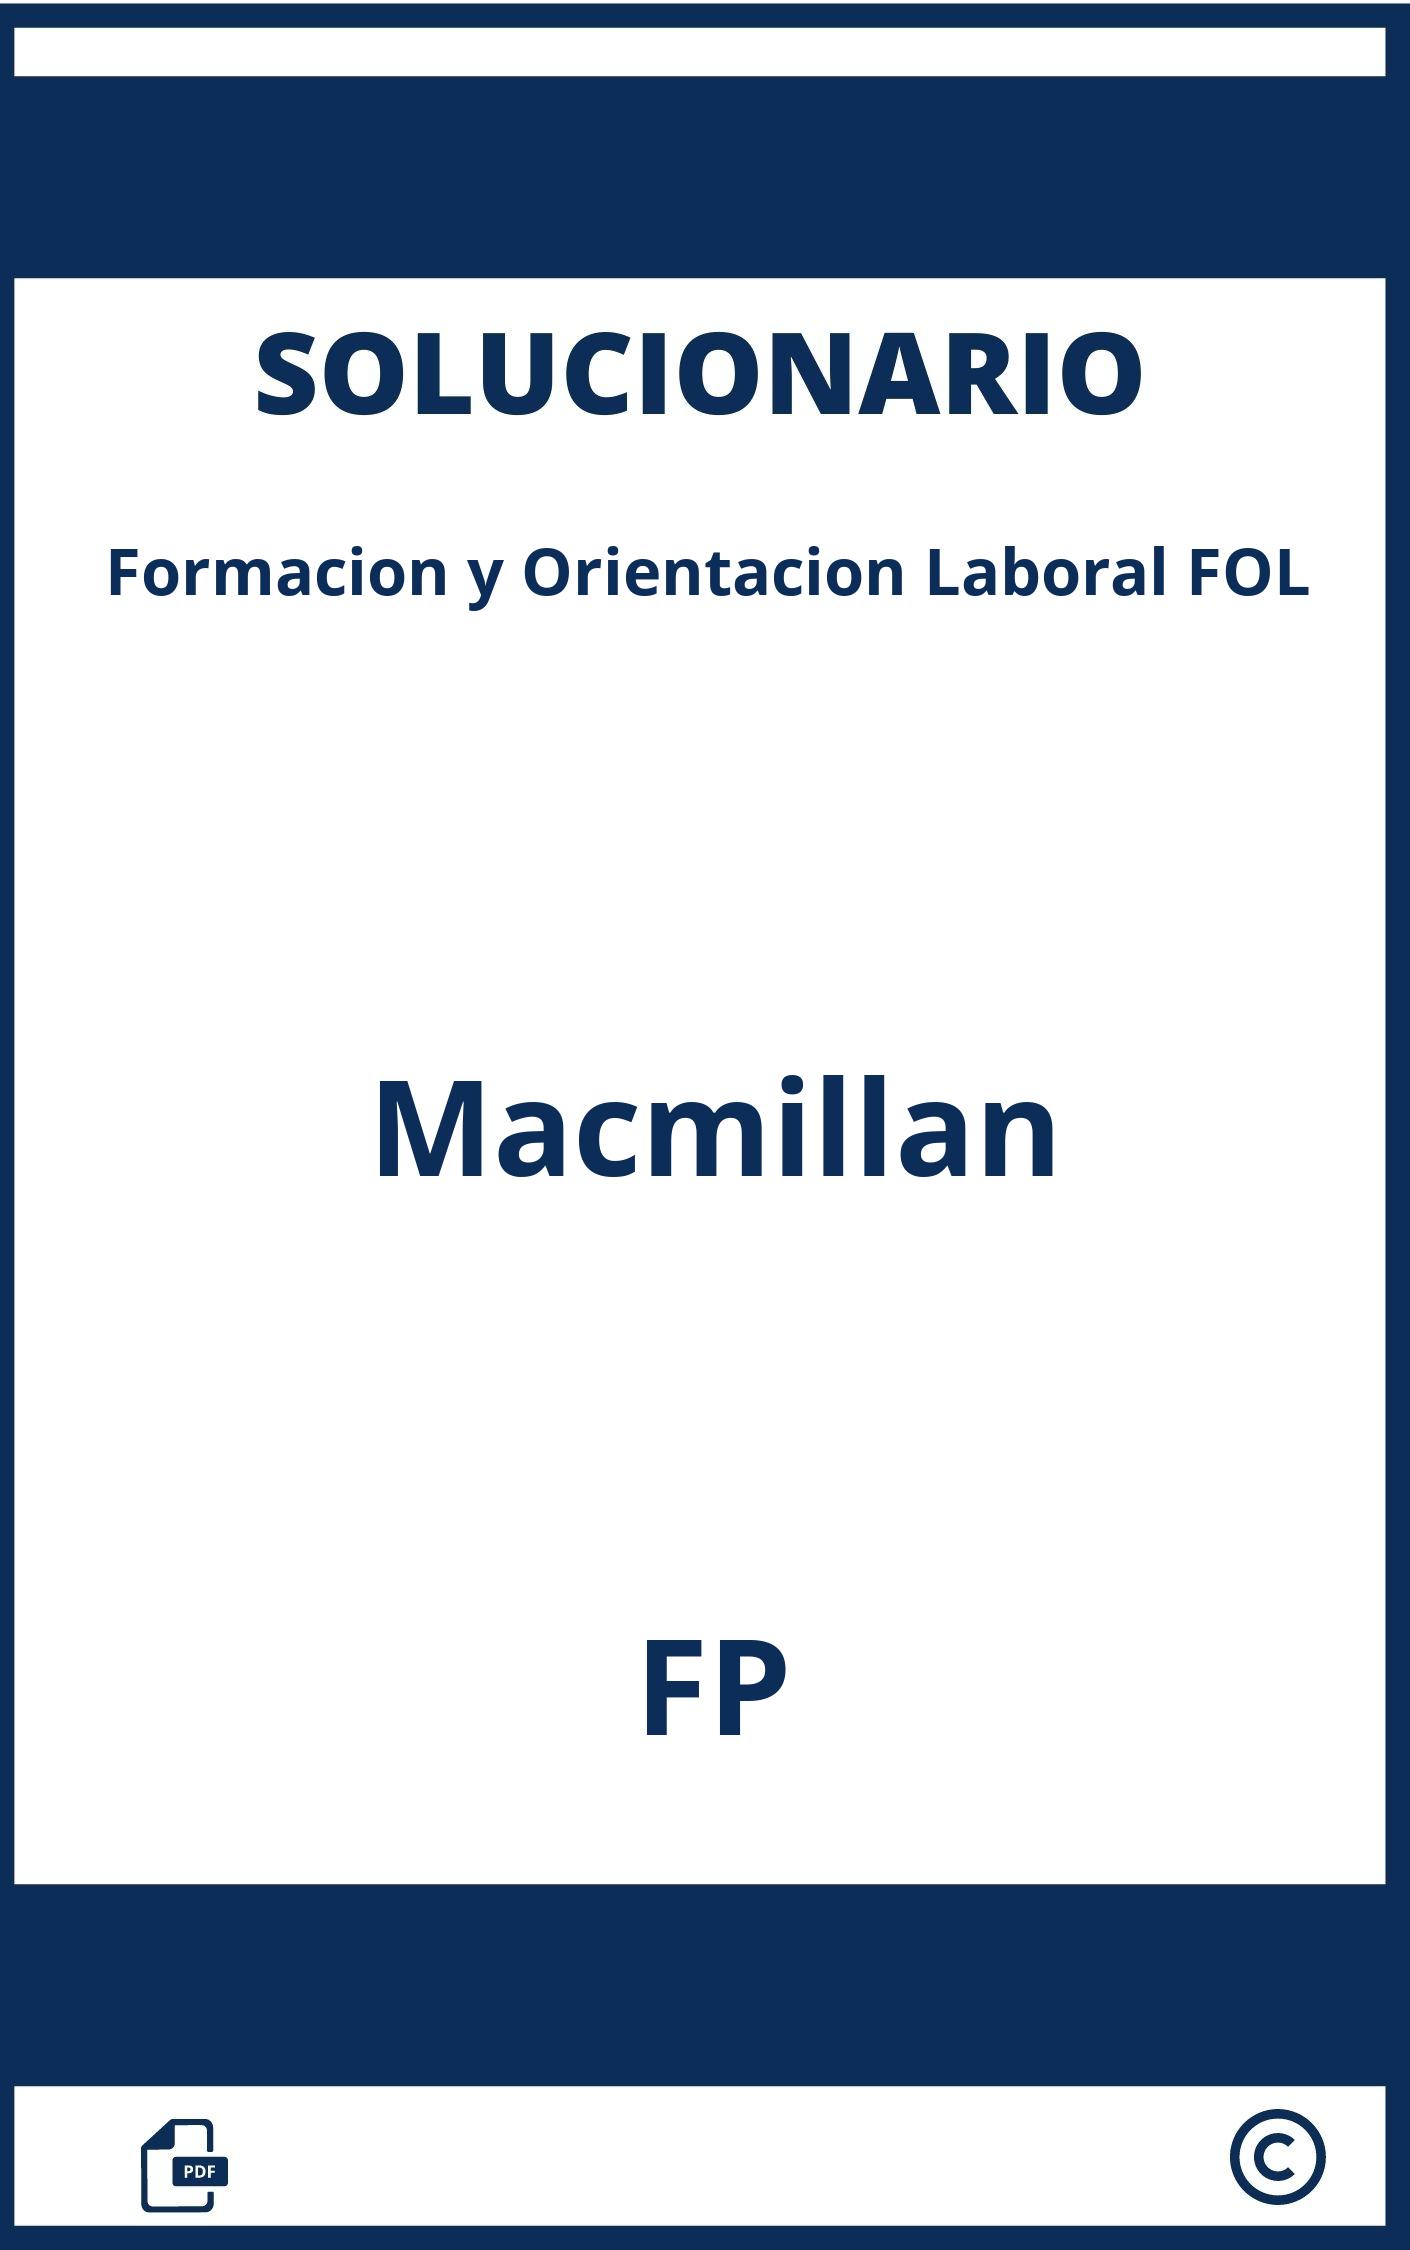 Solucionario Fol Macmillan